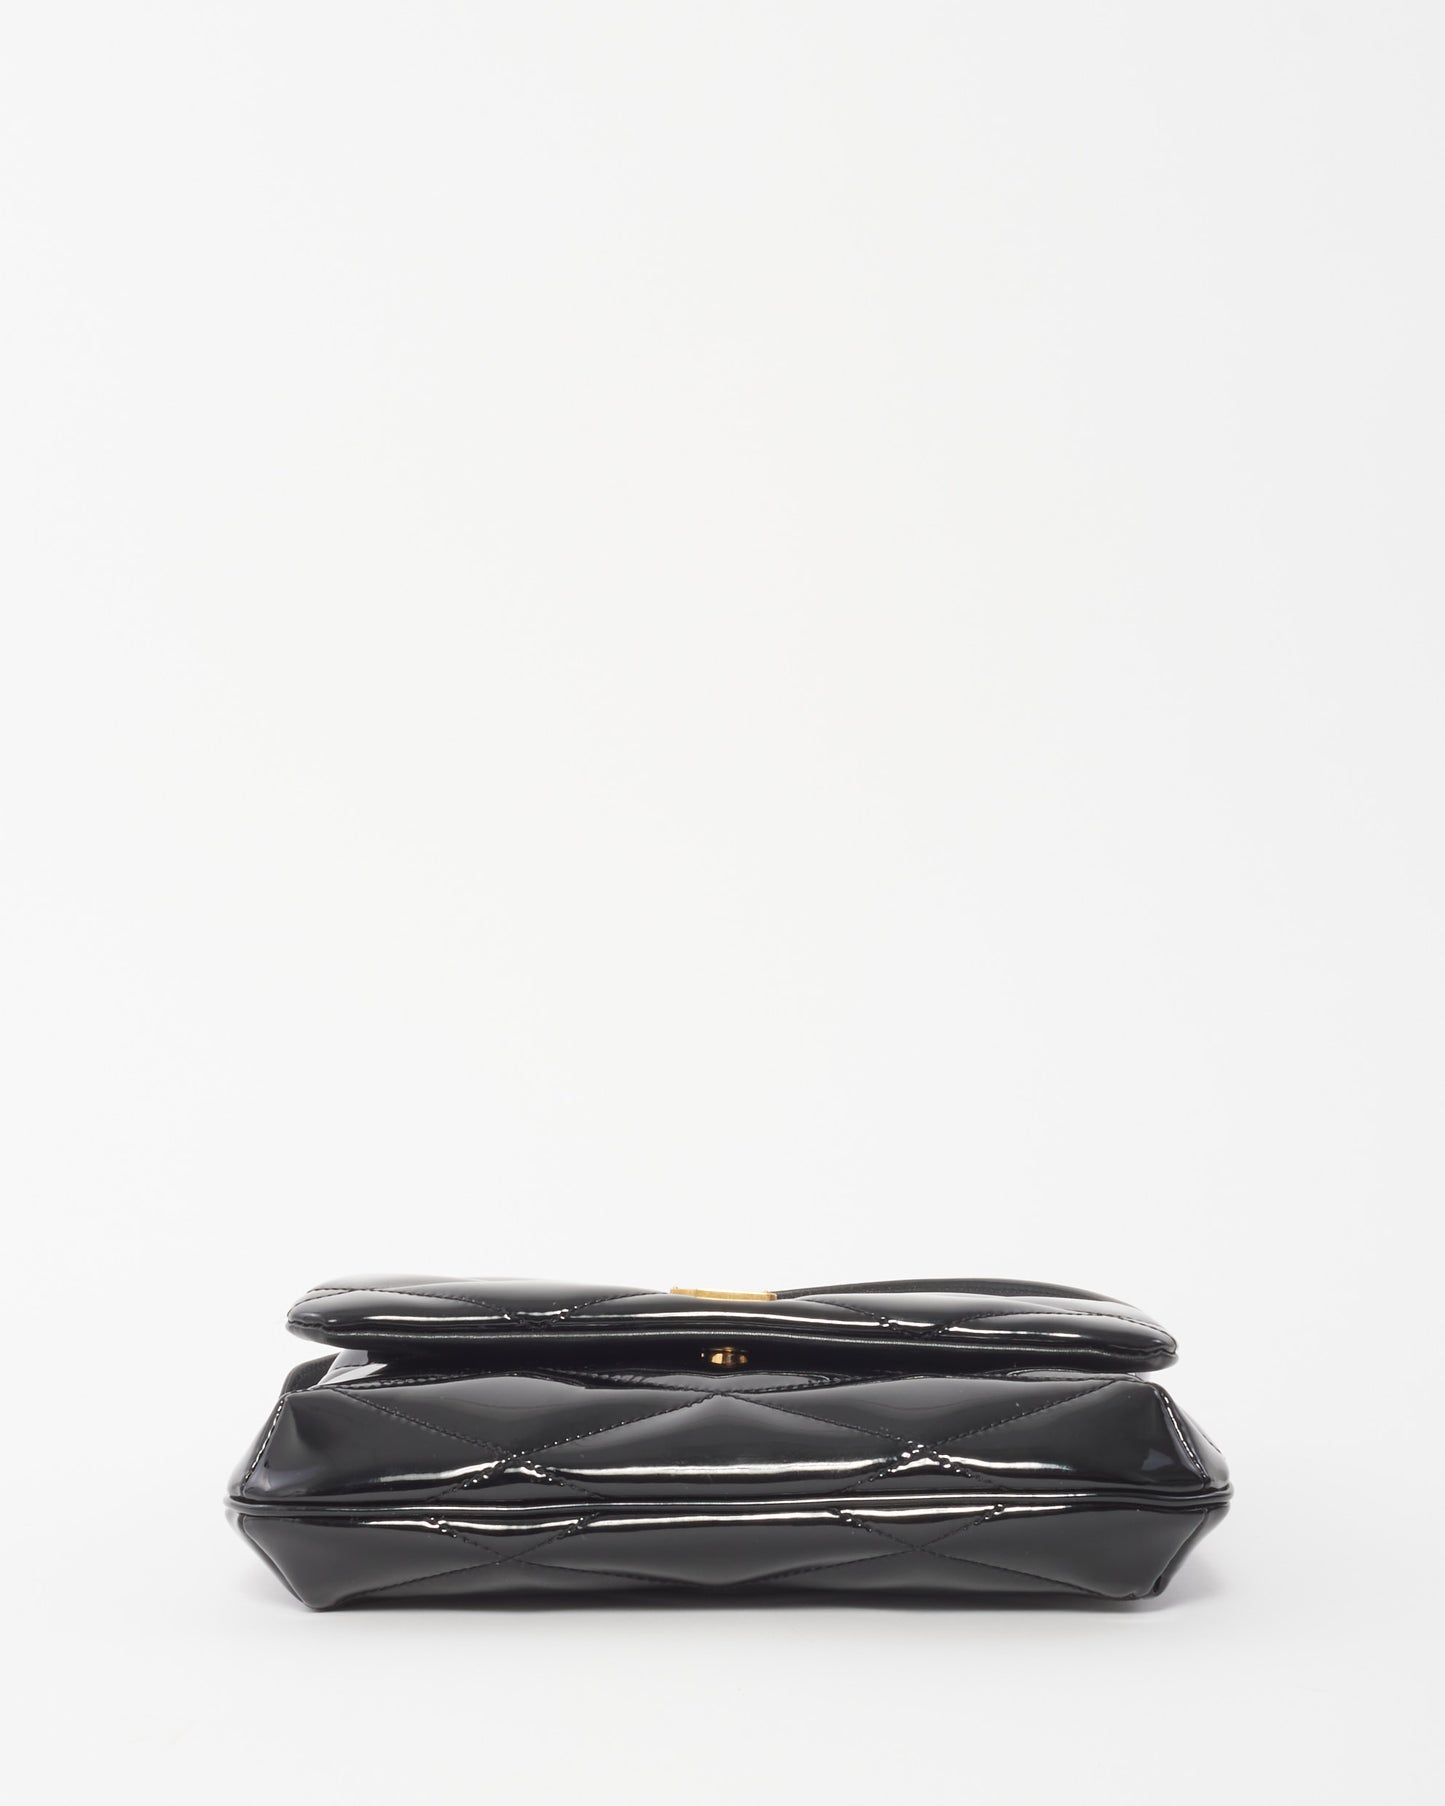 Saint Laurent Black Patent Leather Quilted 5 à 7 Shoulder Bag